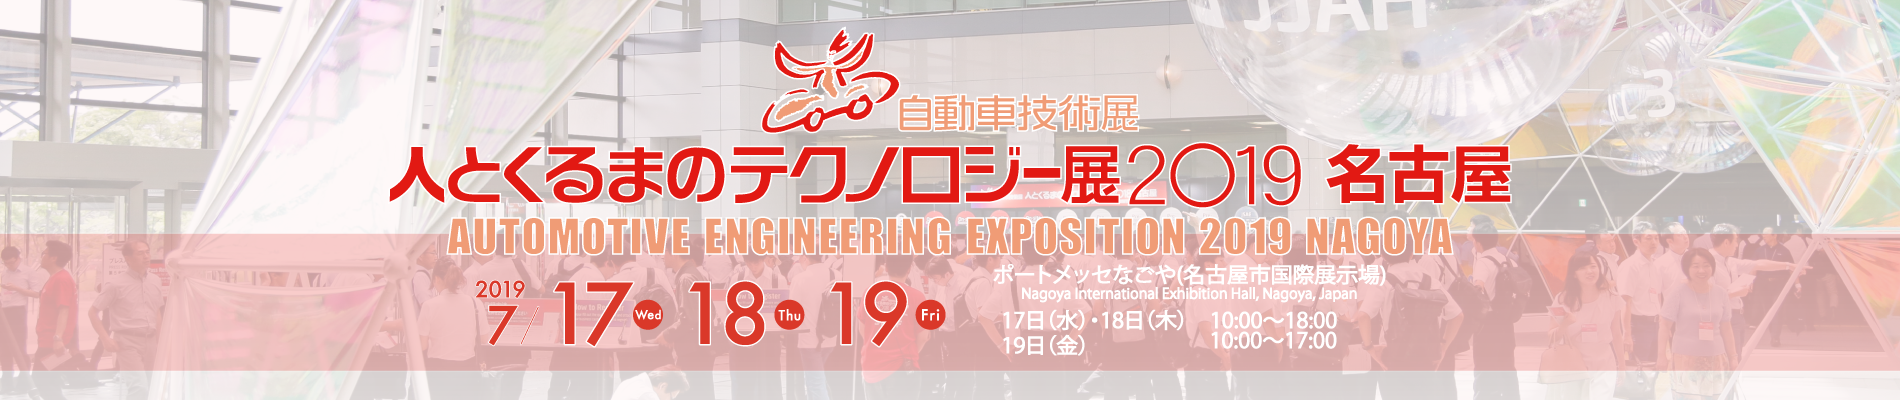 自技会　人とくるまのテクノロジー展2019名古屋を開催